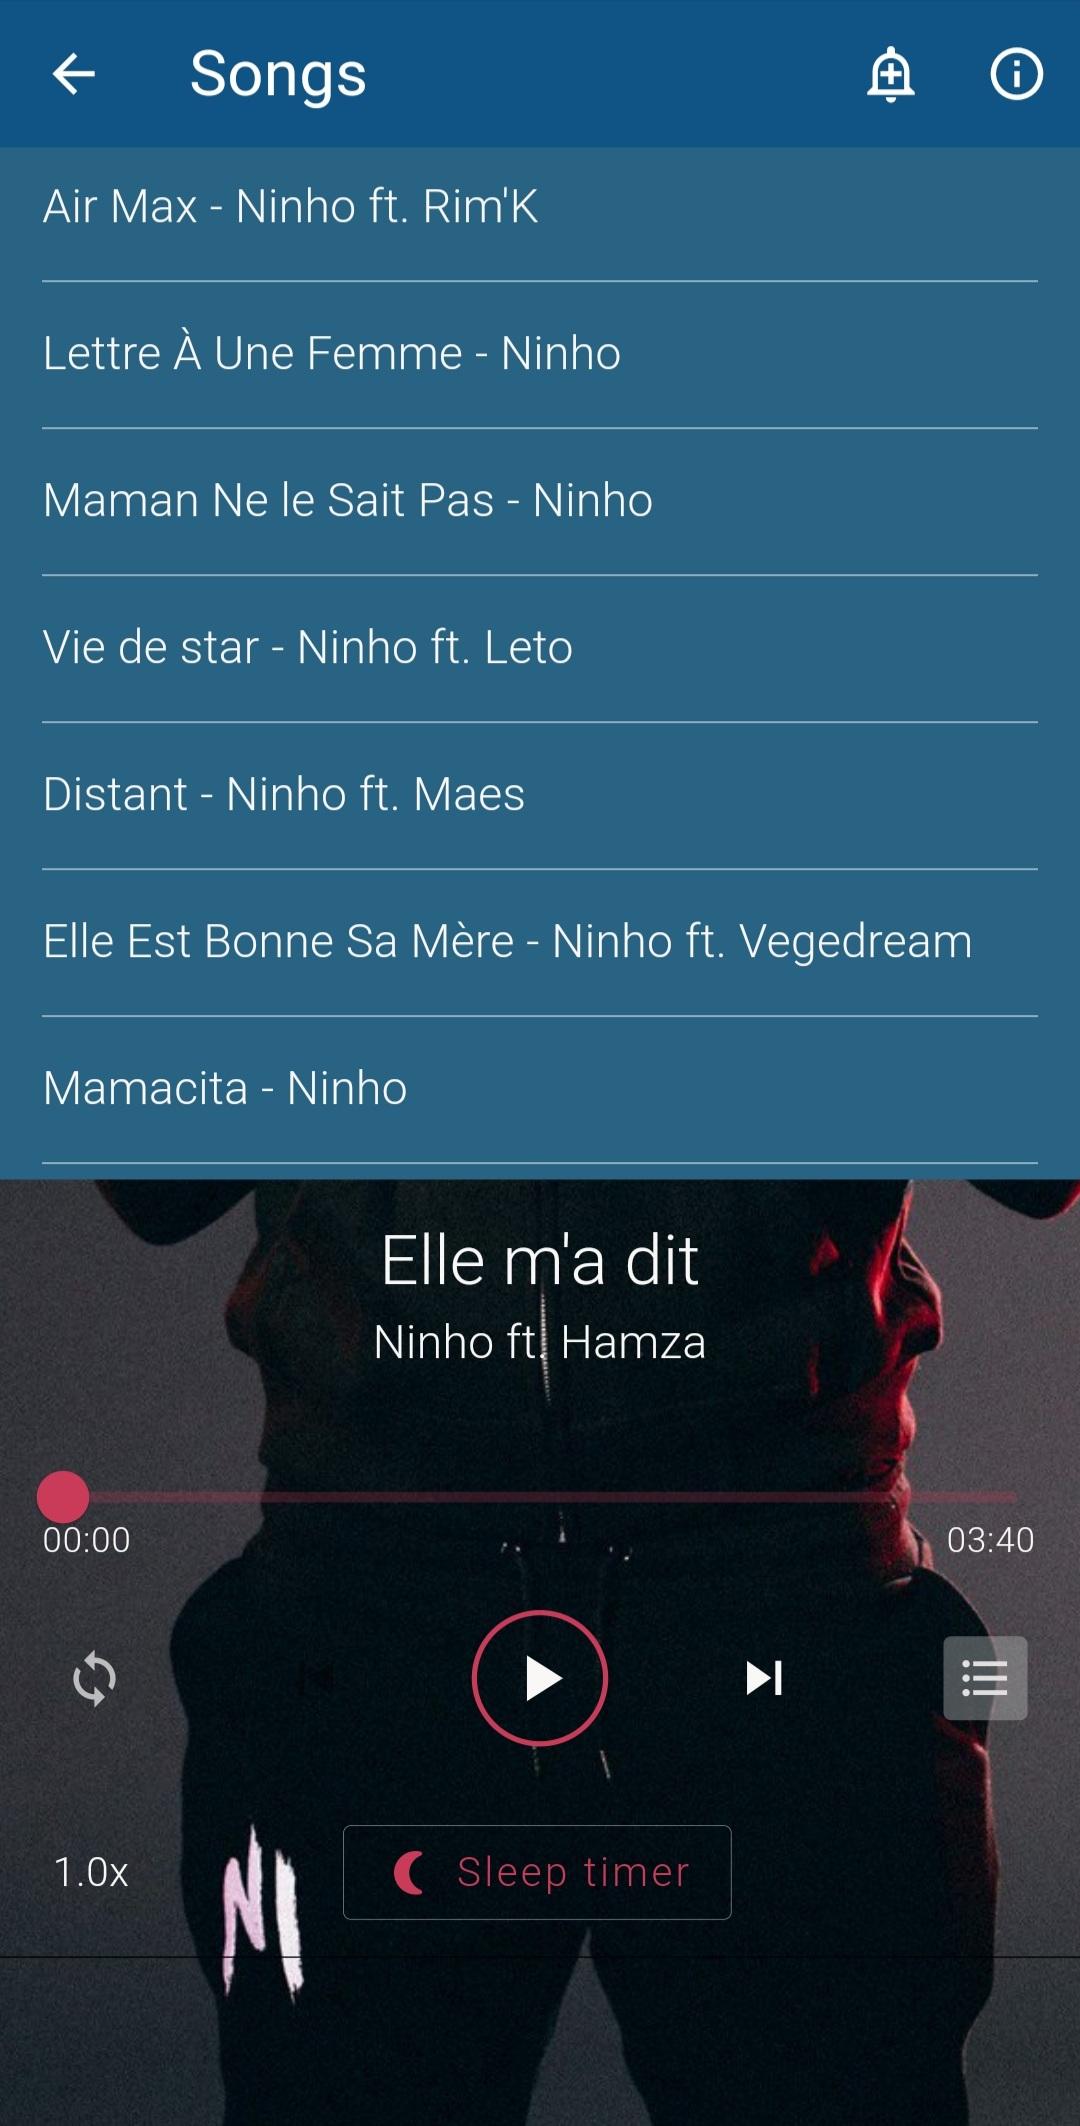 Ninho 2021 Offline (45 Songs) APK pour Android Télécharger